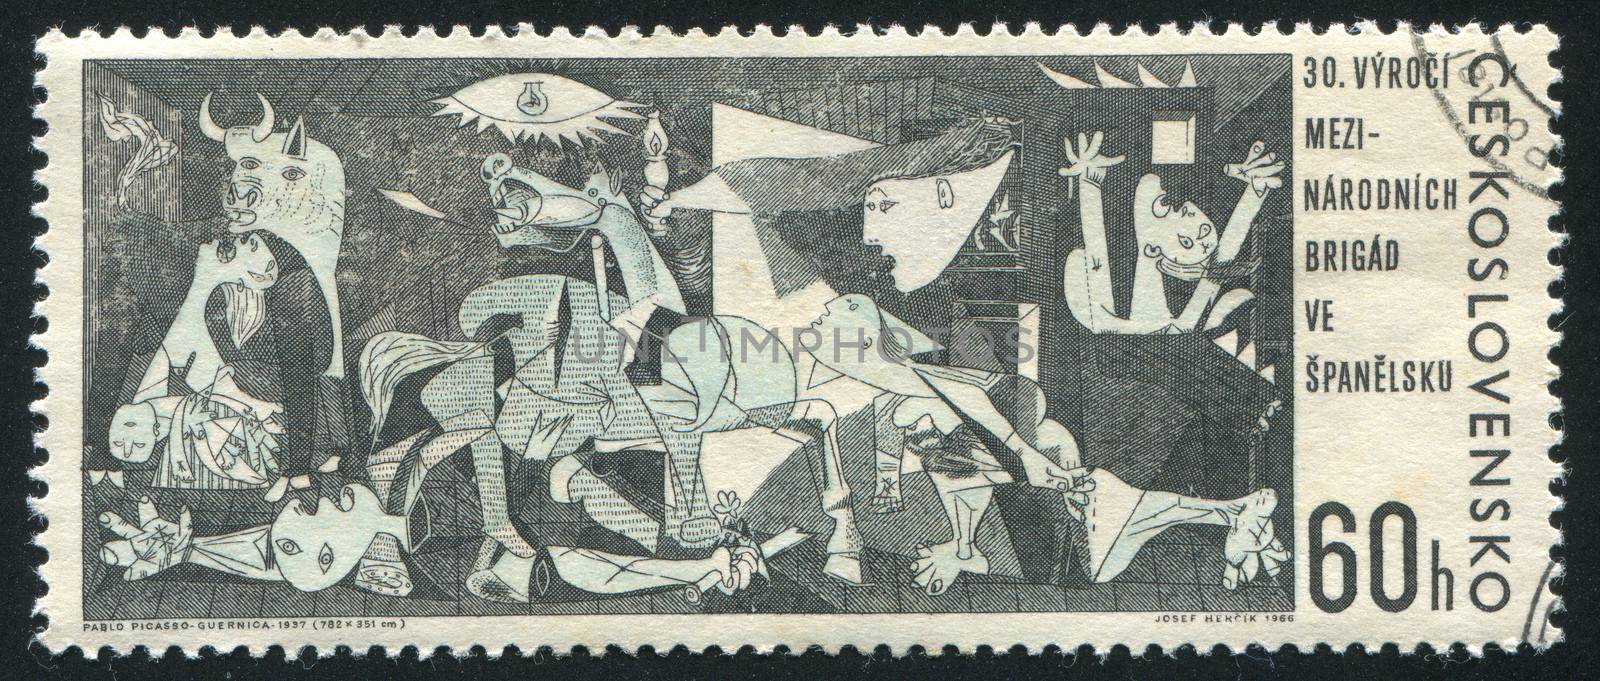 CZECHOSLOVAKIA - CIRCA 1966: stamp printed by Czechoslovakia, shows Guernica by Pablo Picasso, circa 1966